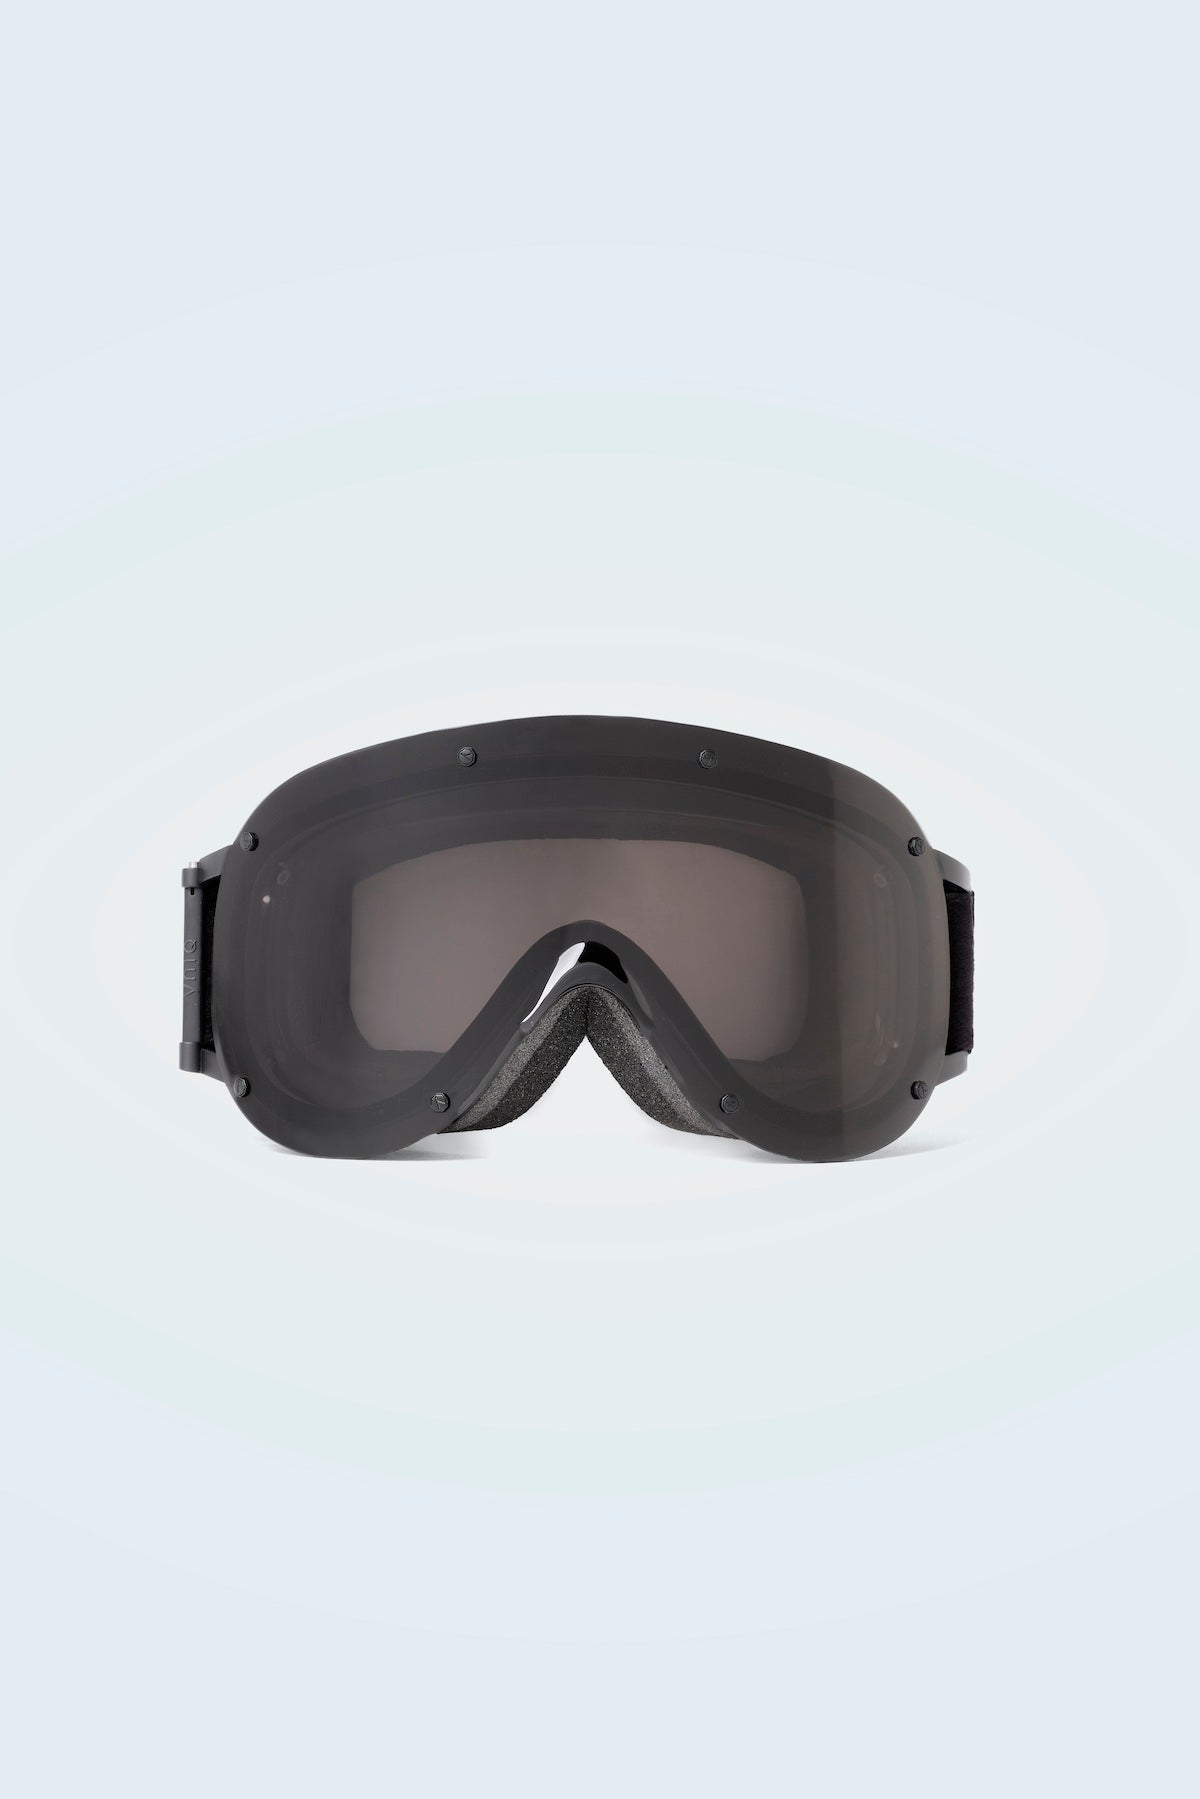 Youki Frameless YNIQ Collaboration Ski Goggles